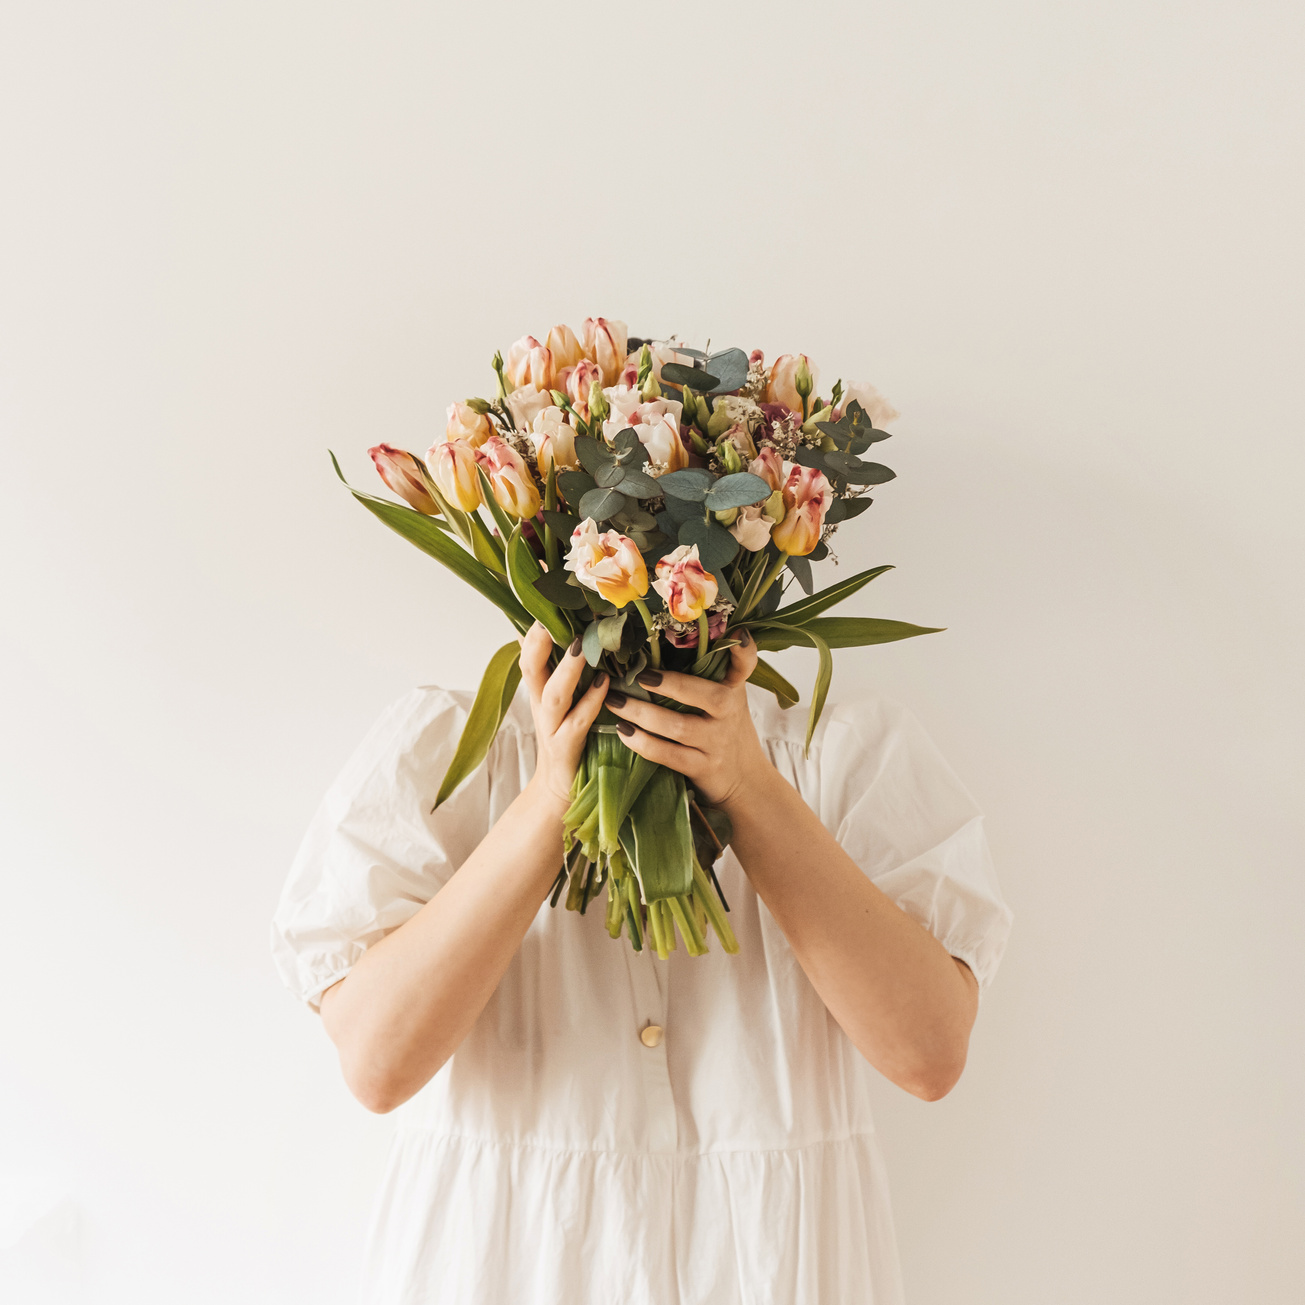 Girl In White Dress Holding Flower Bouquet